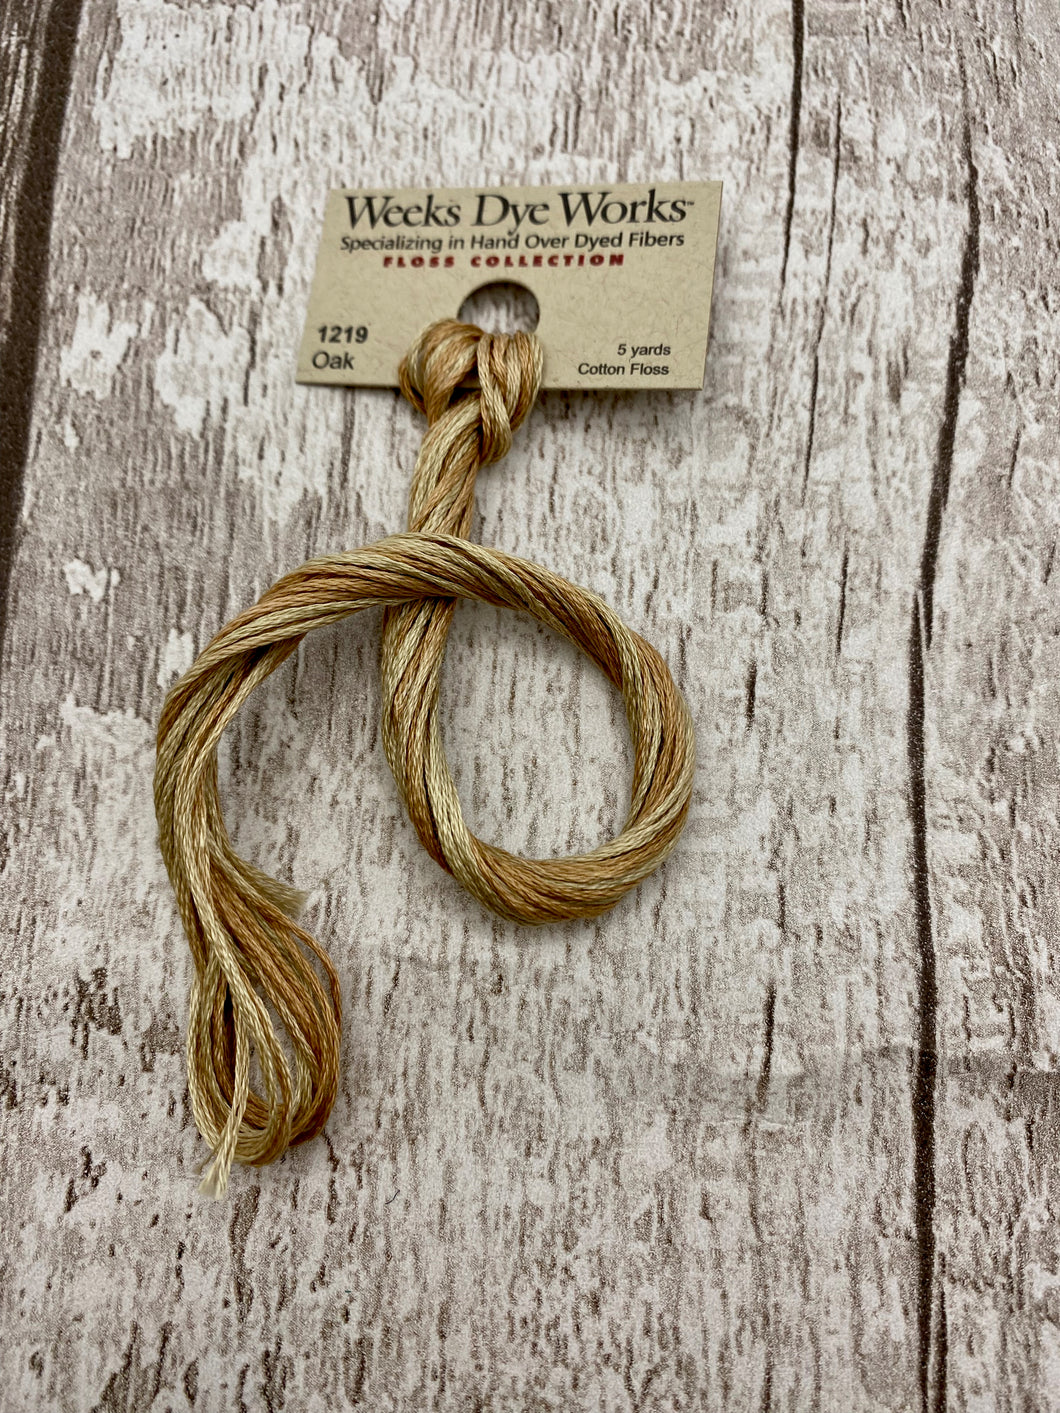 Oak (#1219) Weeks Dye Works, 6-strand cotton floss